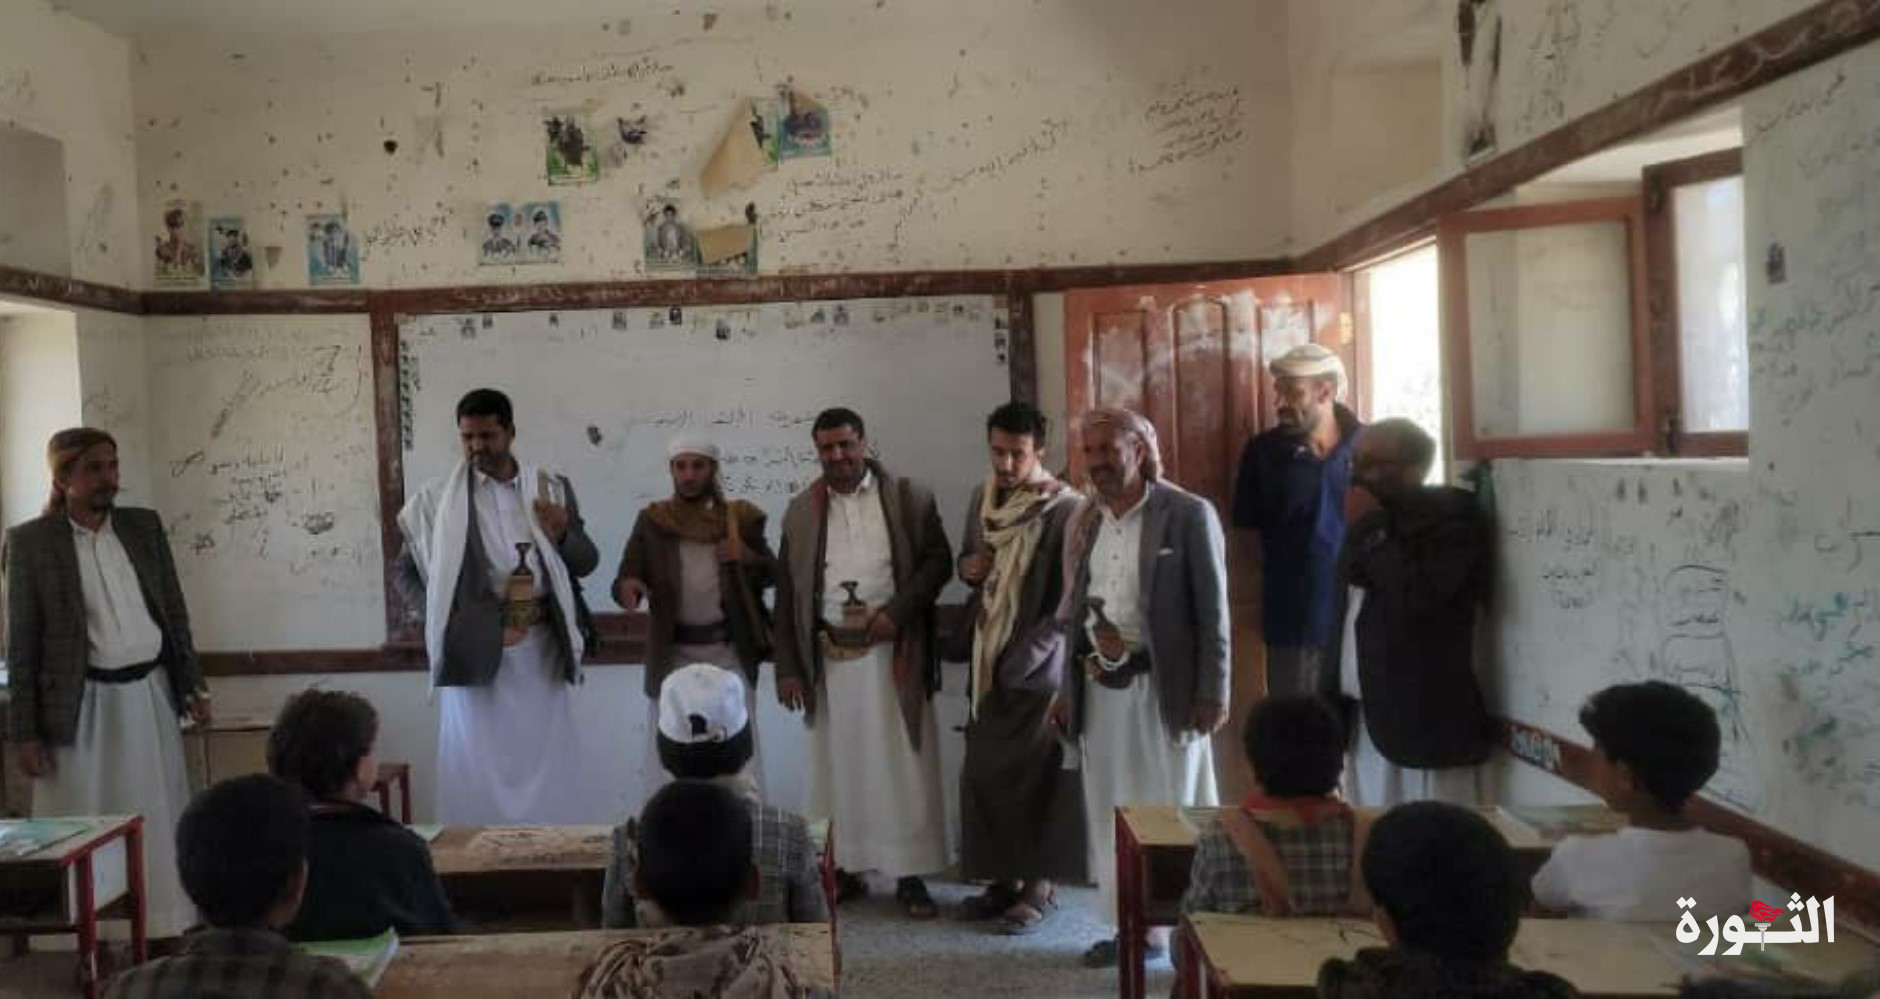 تفقد الدورات الصيفية والاختبارات العامة بمديريات محافظة صنعاء